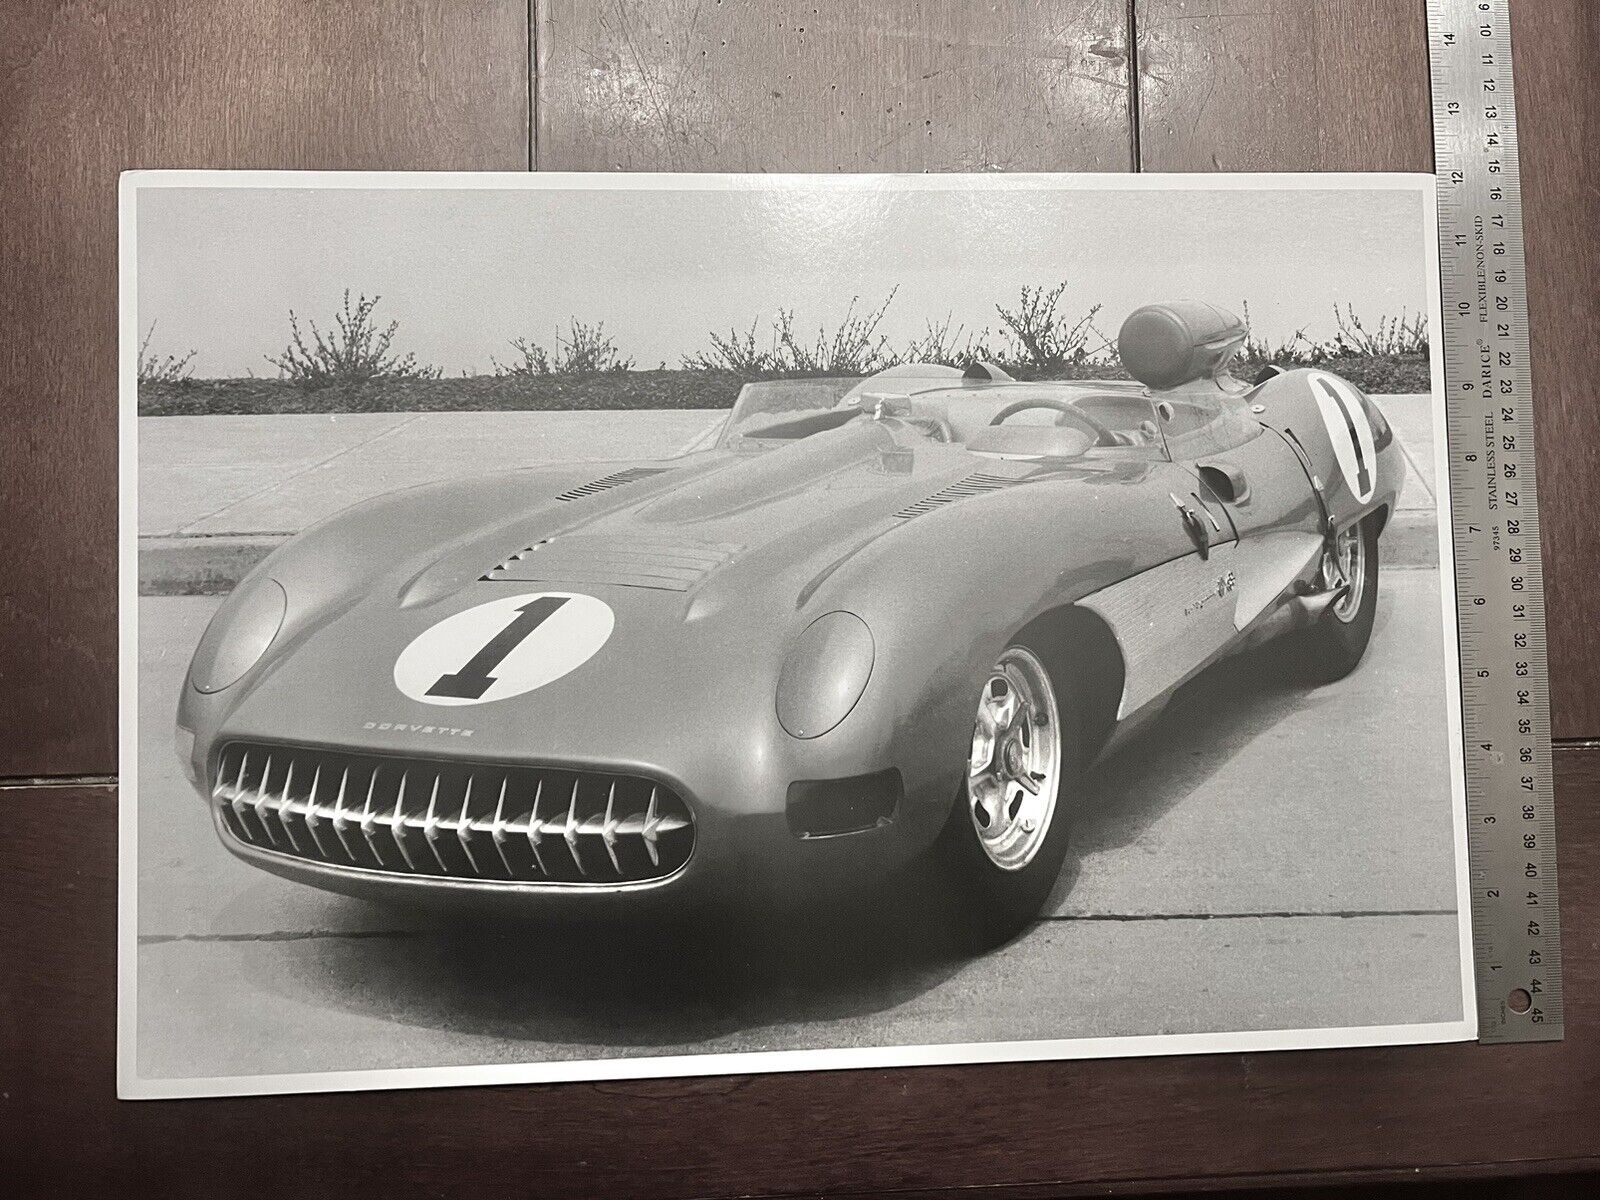 Xtrmly Rare LARGE Size Vintage Photo Of A Rare Corvette We’ve X Car Auto Photos